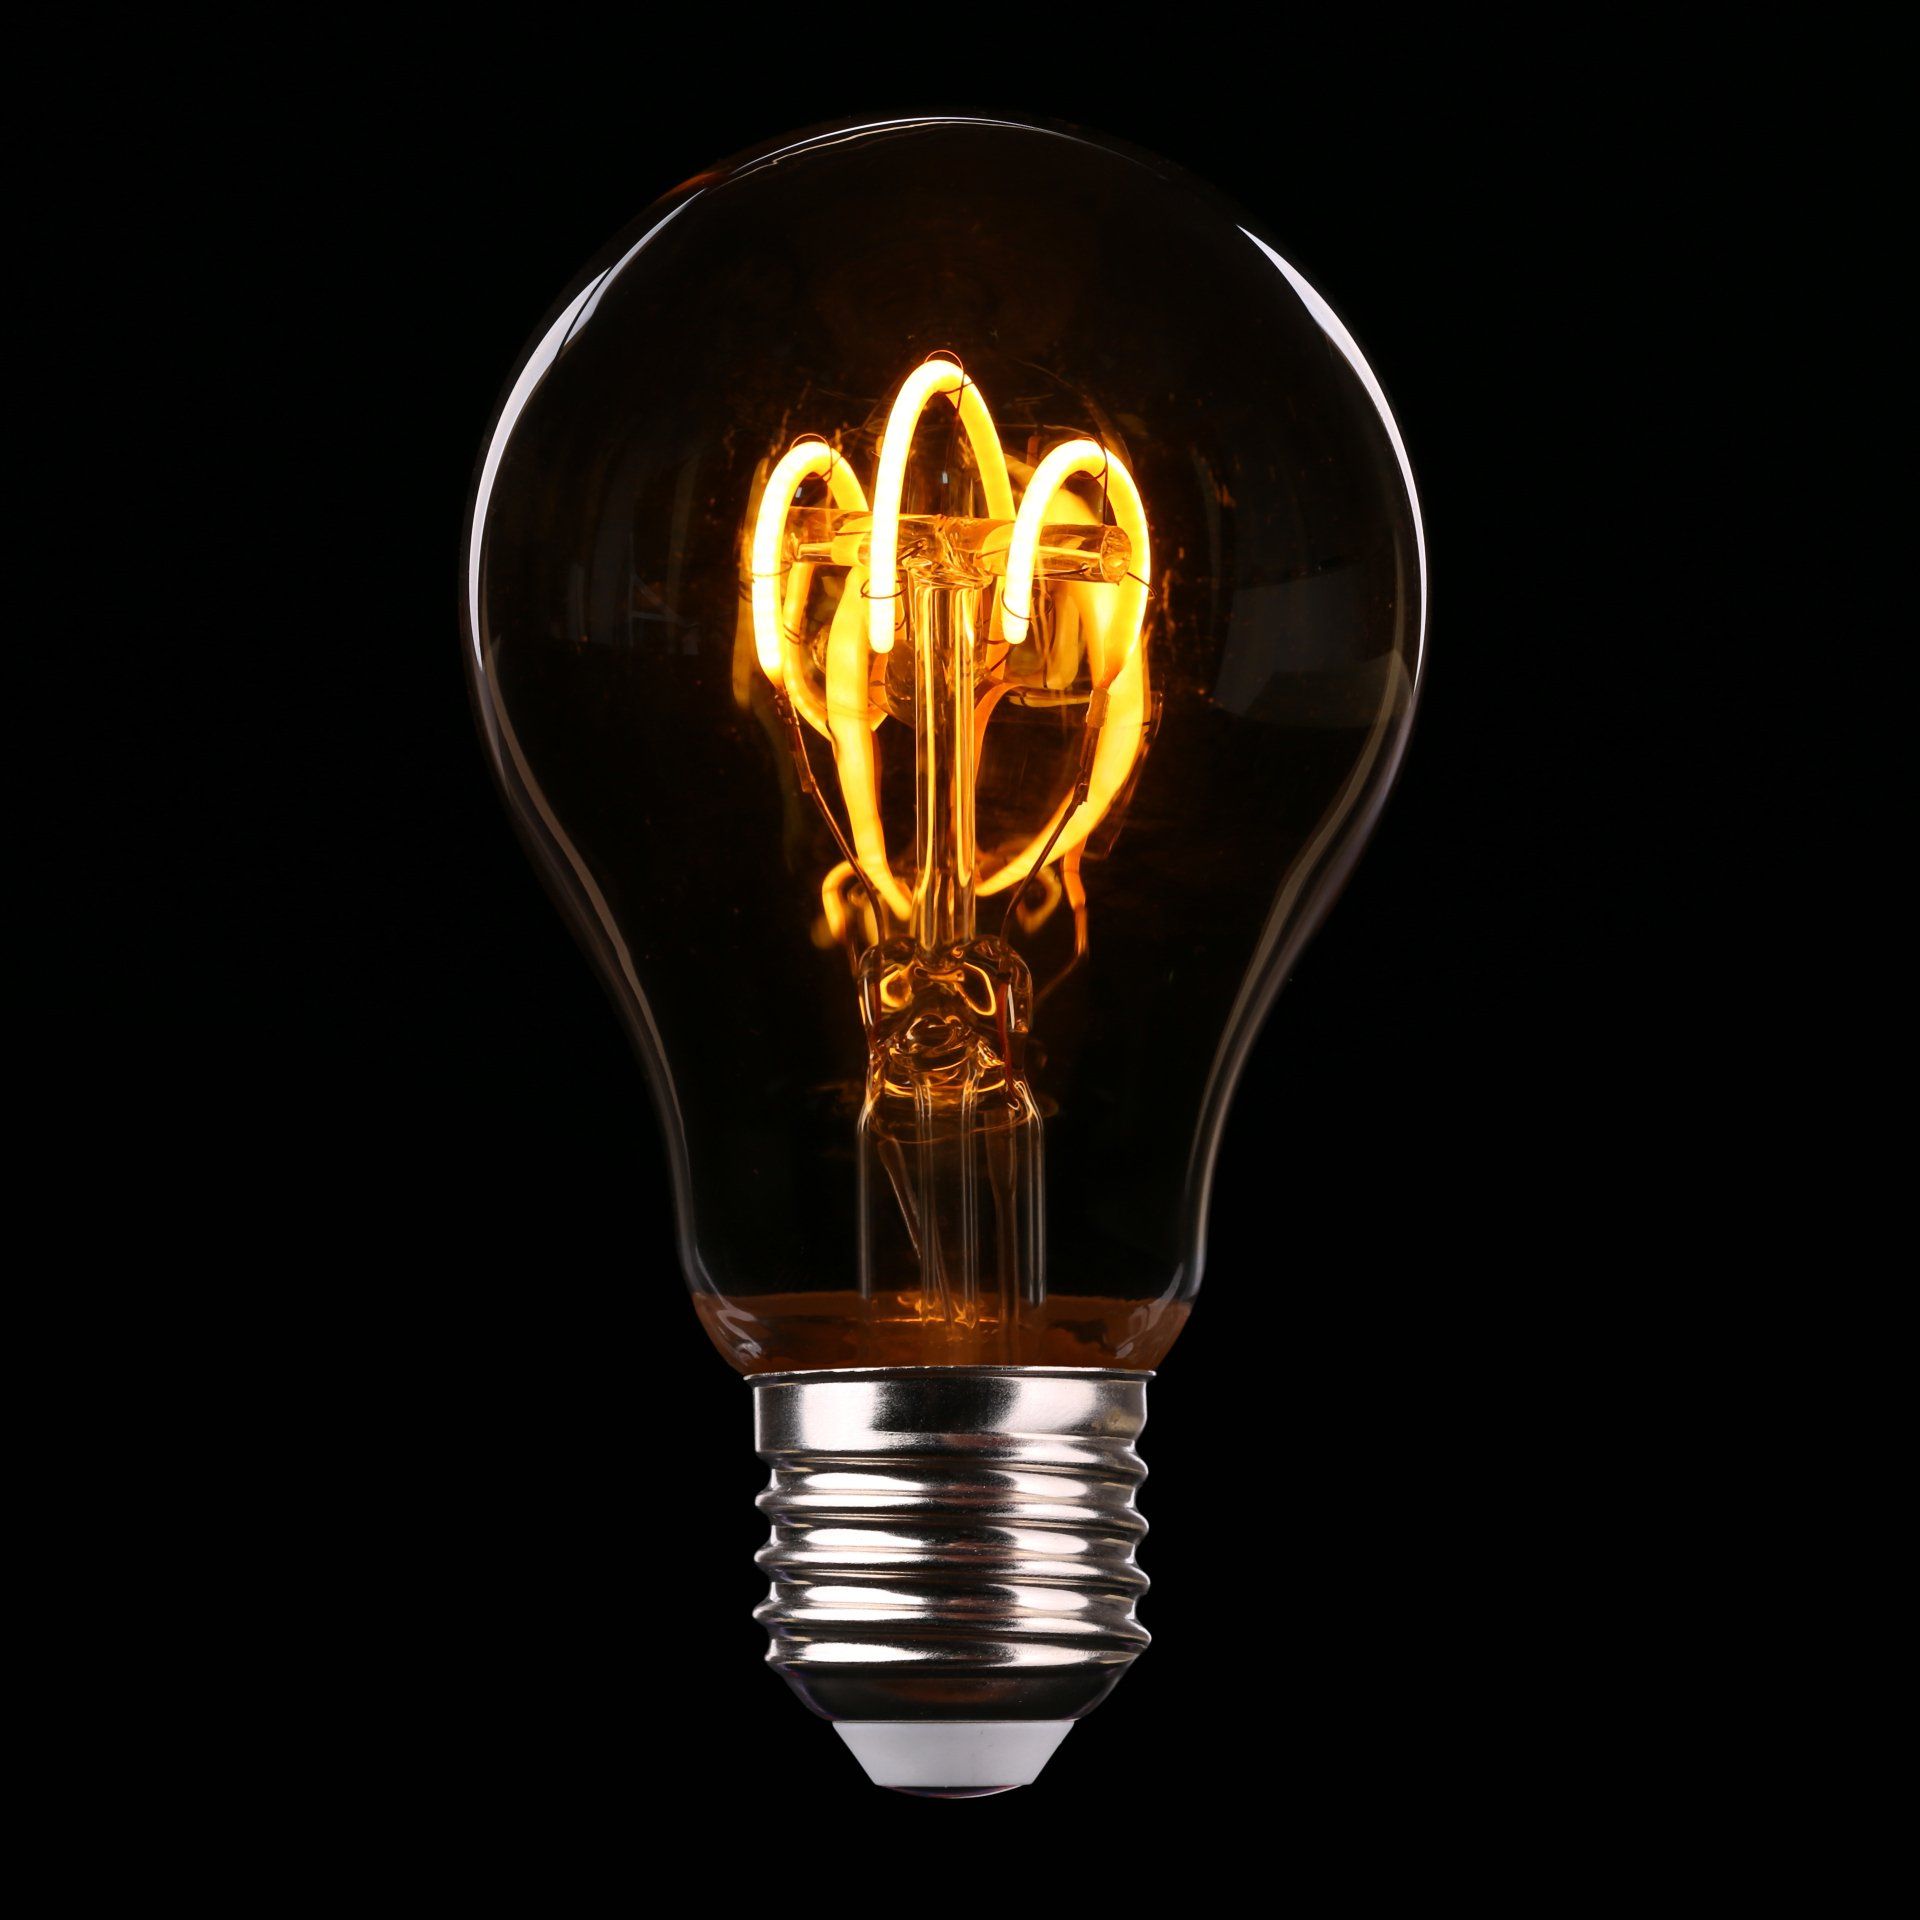 lampa med glödtråd eller LED som föreställer äldre tiders glödtråd